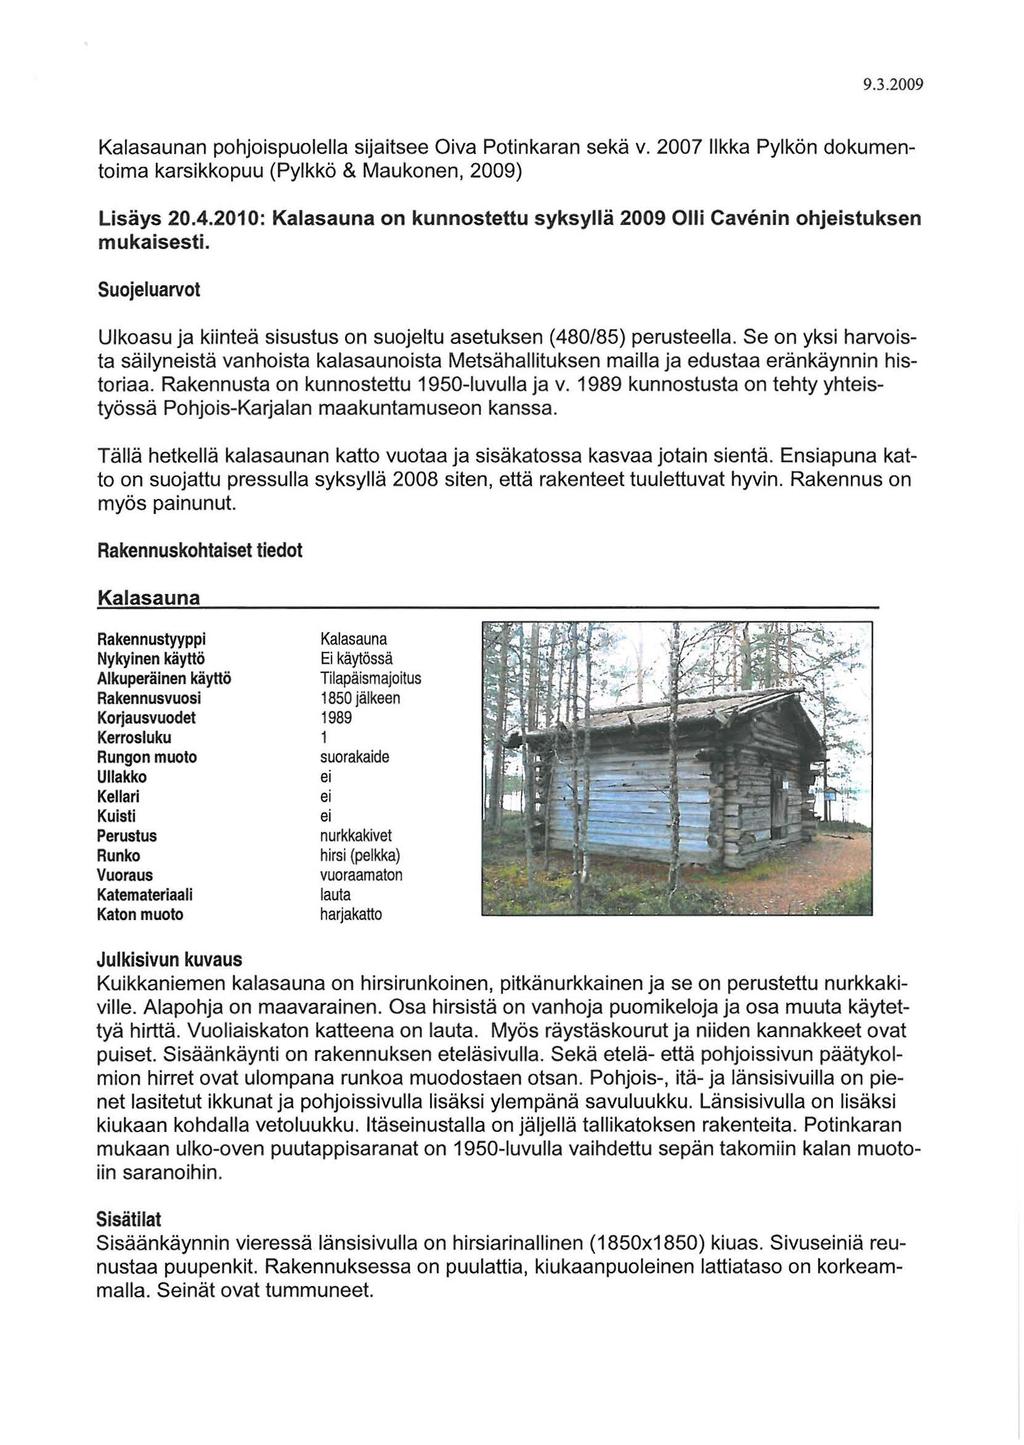 Kalasaunan pohjoispuolella sijaitsee Oiva Potinkaran sekä v. 2007 likka Pylkön dokumentoima karsikkopuu (Pylkkö & Maukonen, 2009) Lisäys 20.4.